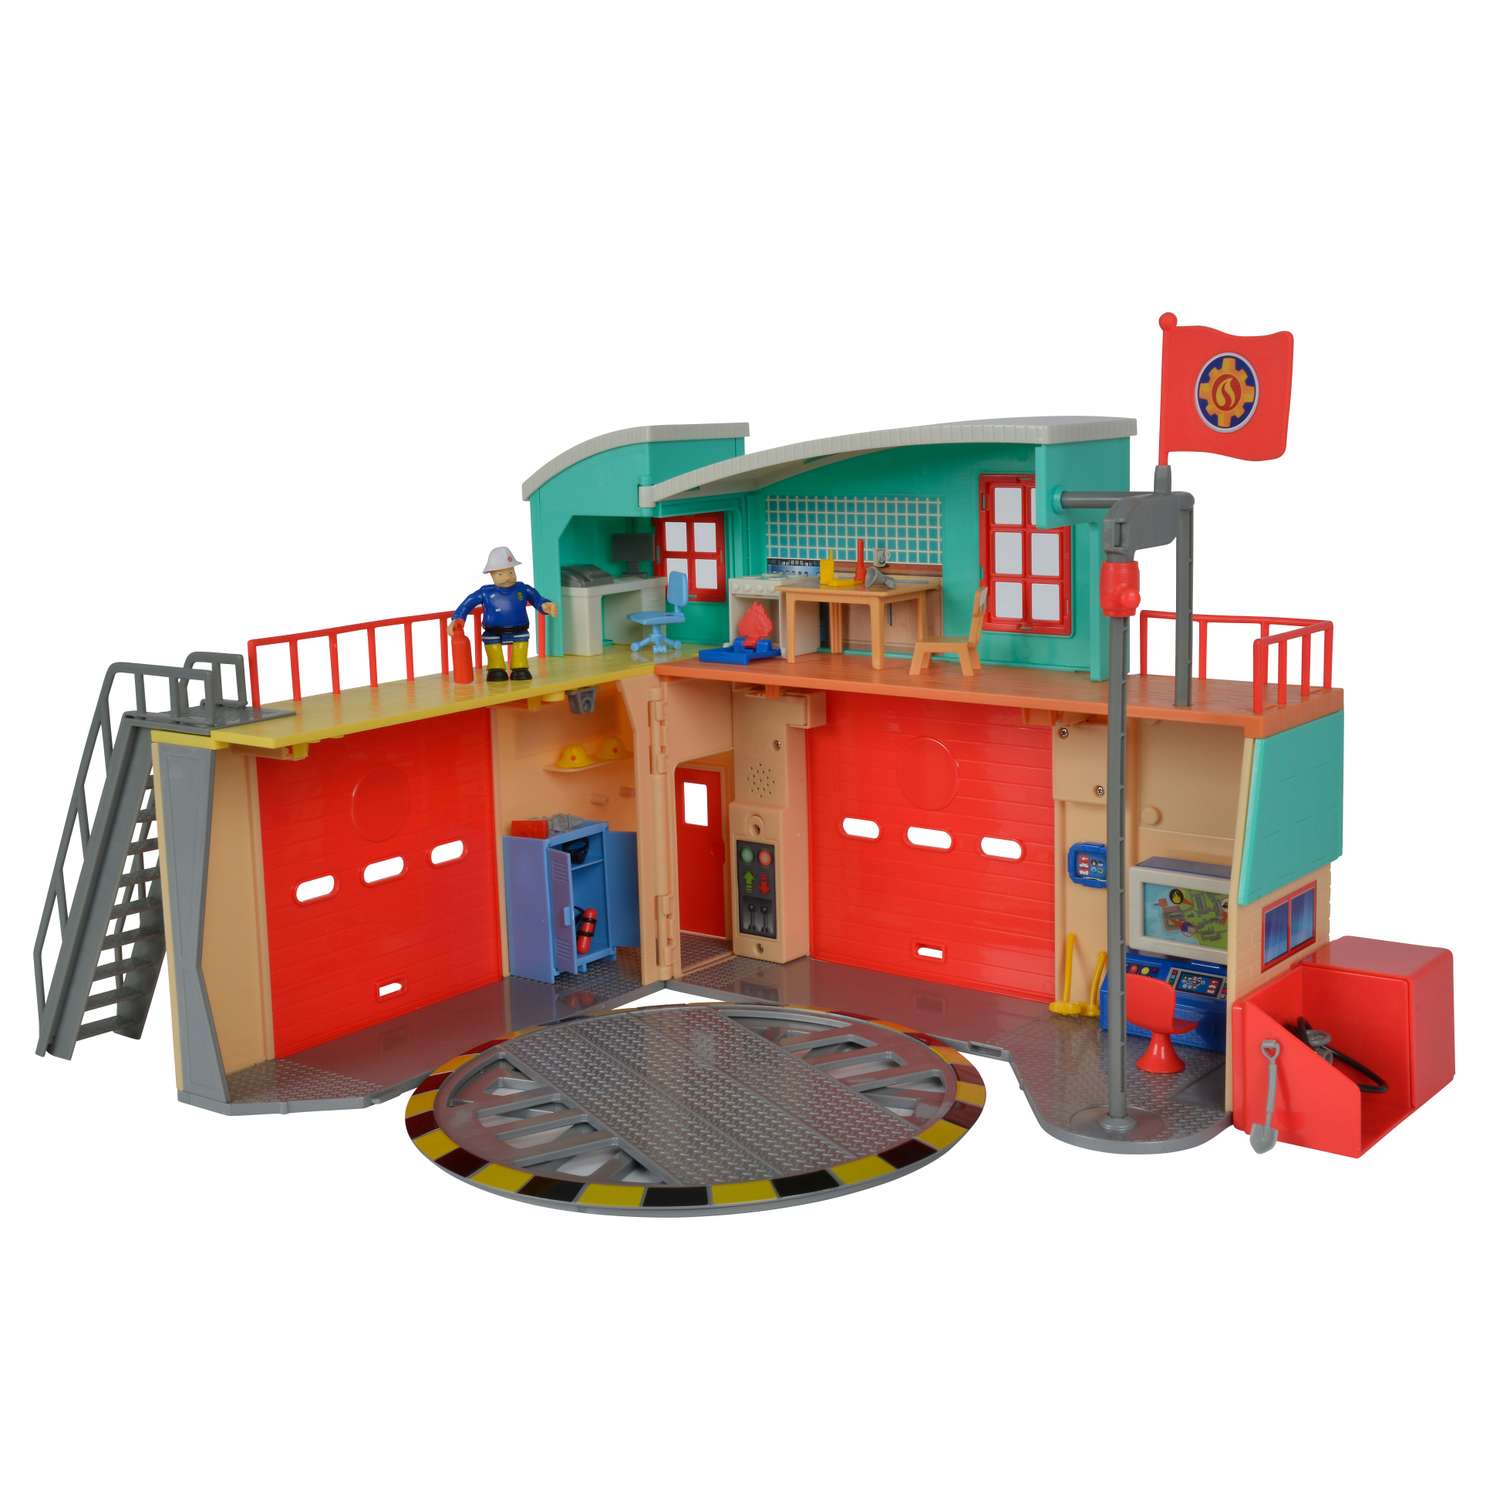 Пожарная станция Fireman Sam фигука со световыми и звуковыми эффектами 9258282 - фото 1